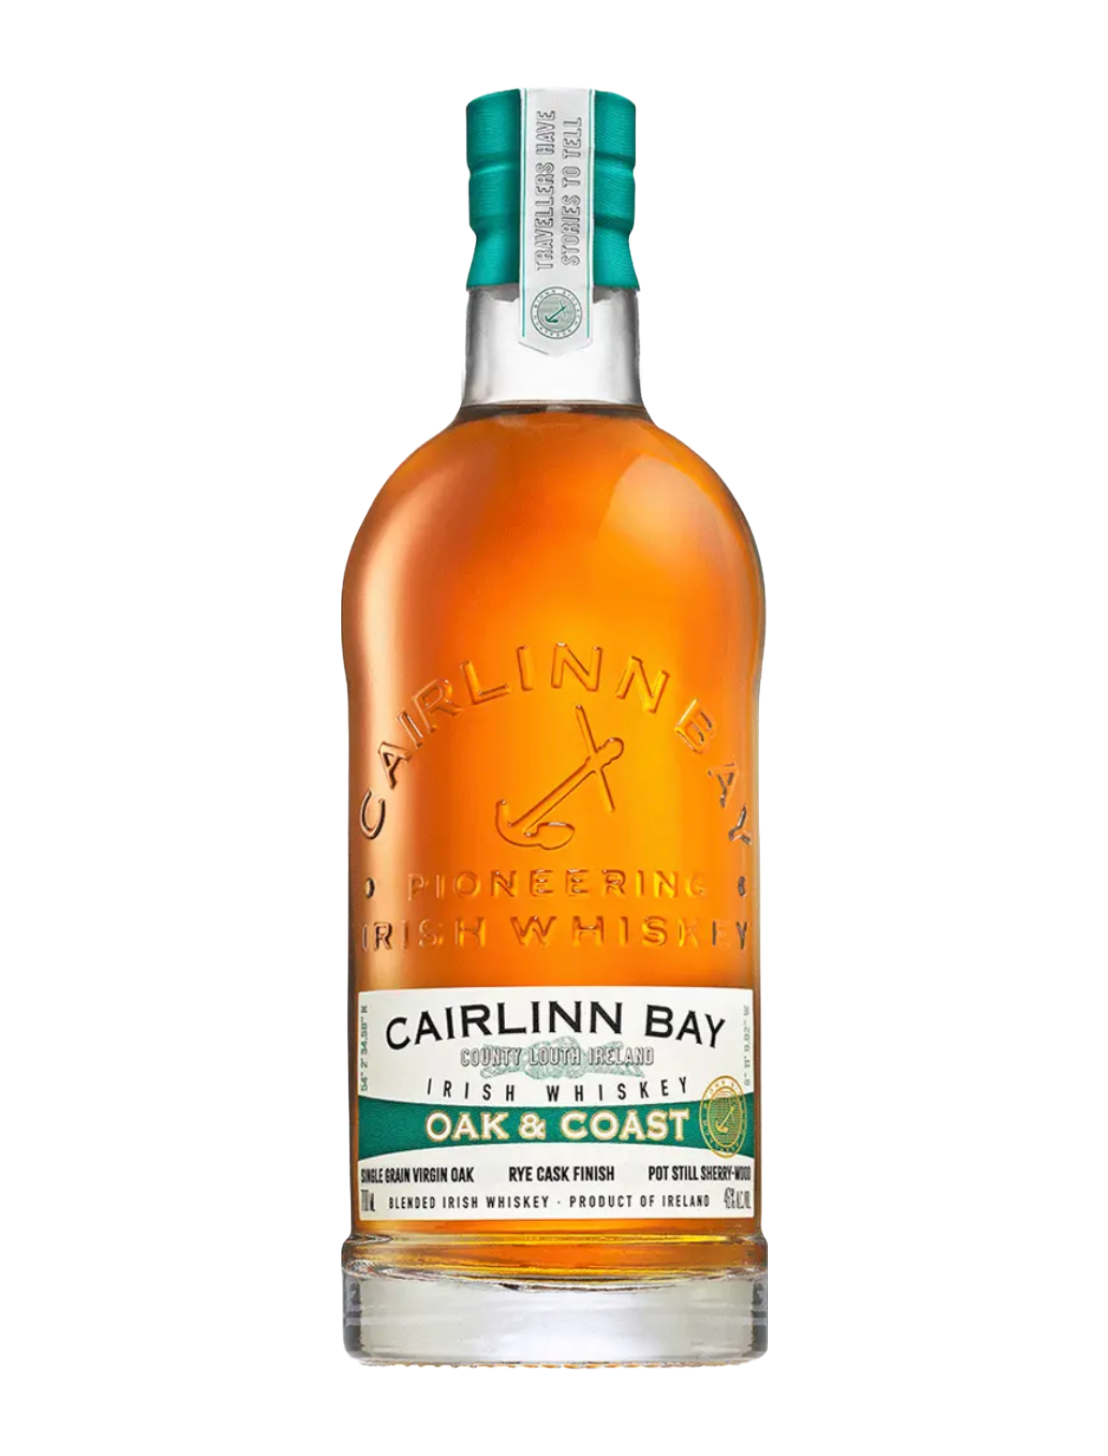 An elegant bottle of Cairlinn Bay Oak & Coast Blended Irish Whiskey in front of a plain white background